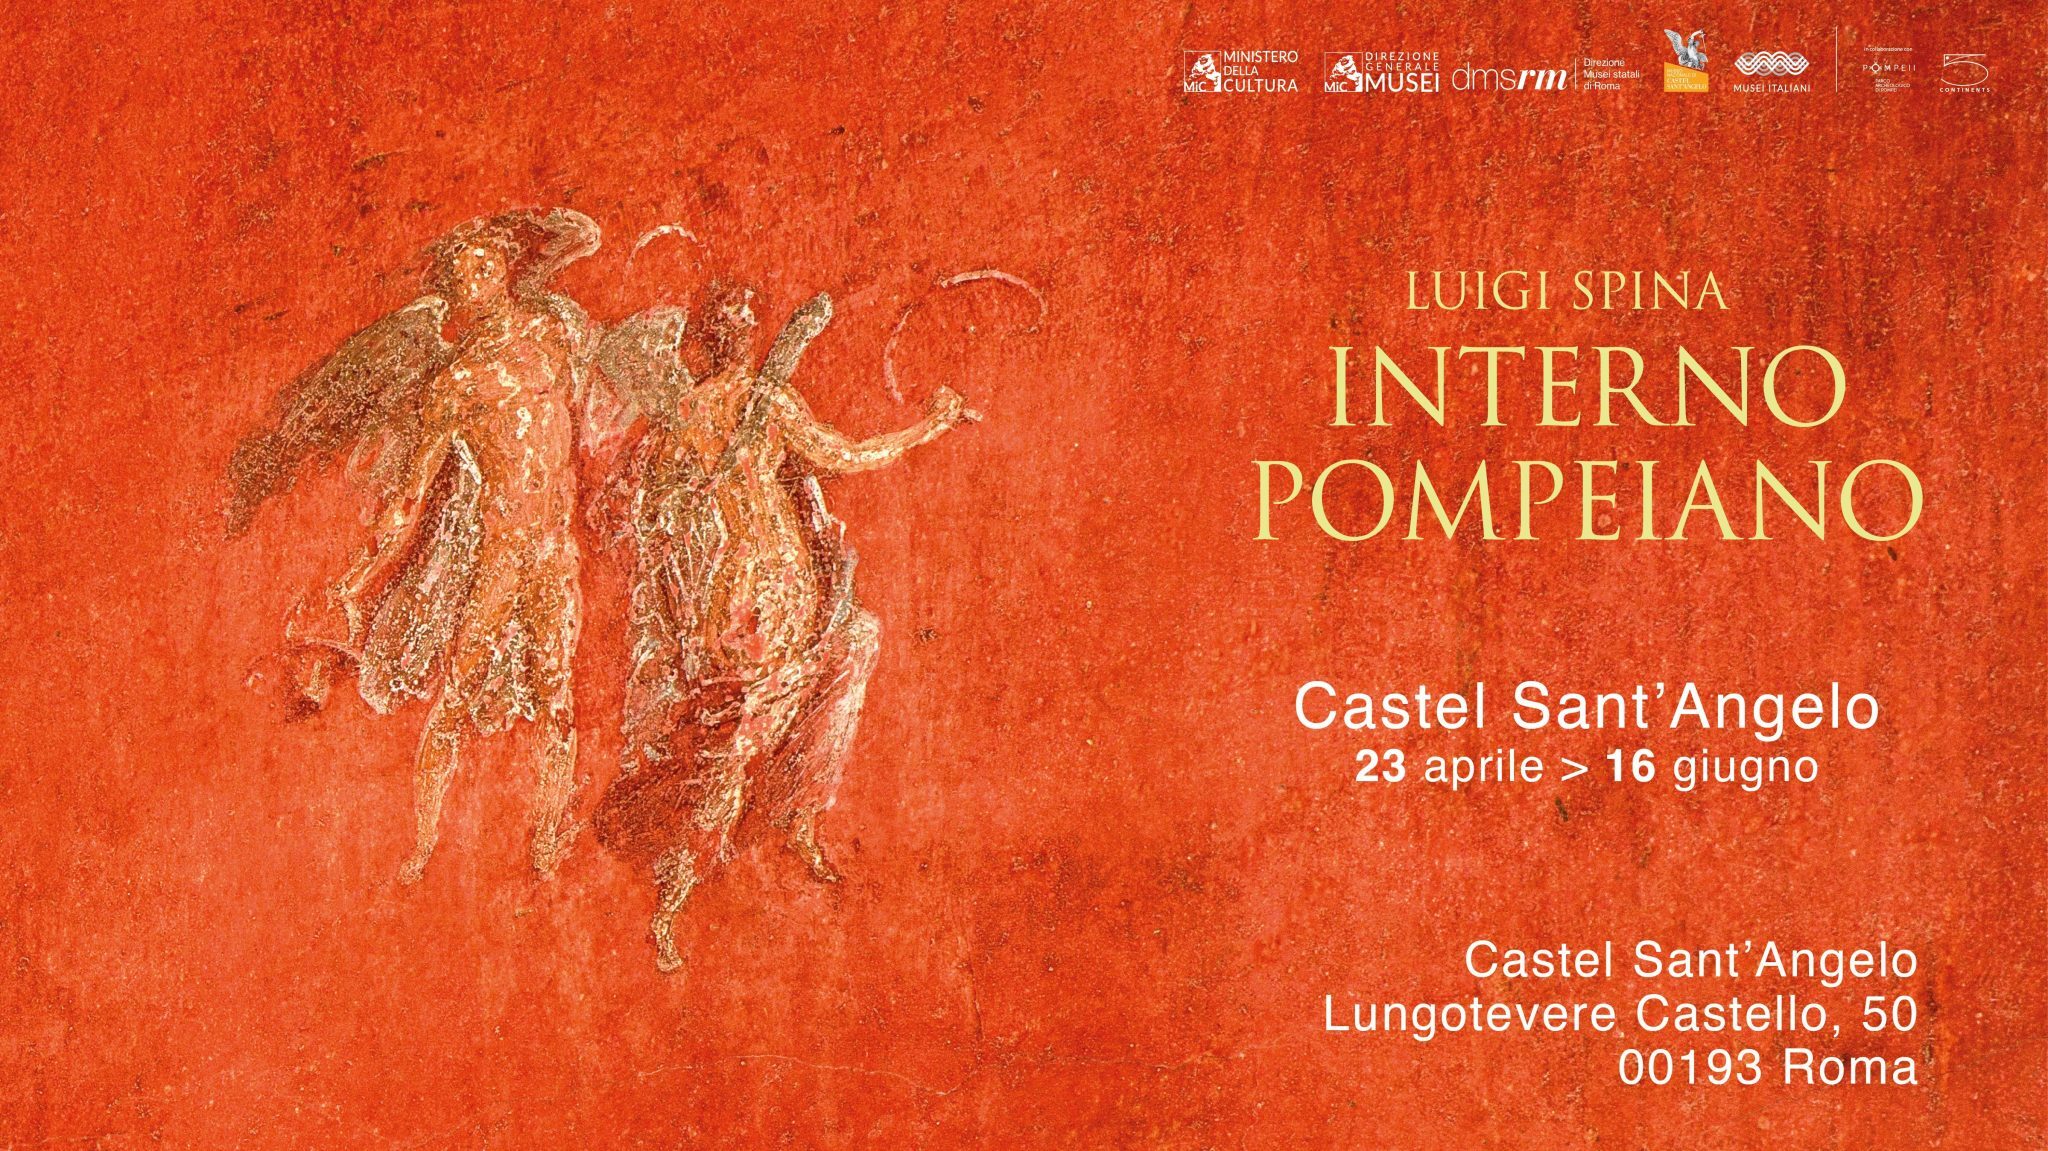 Castel Sant’Angelo ospita la prima grande mostra dedicata al progetto fotografico di Luigi Spina, Interno Pompeiano.